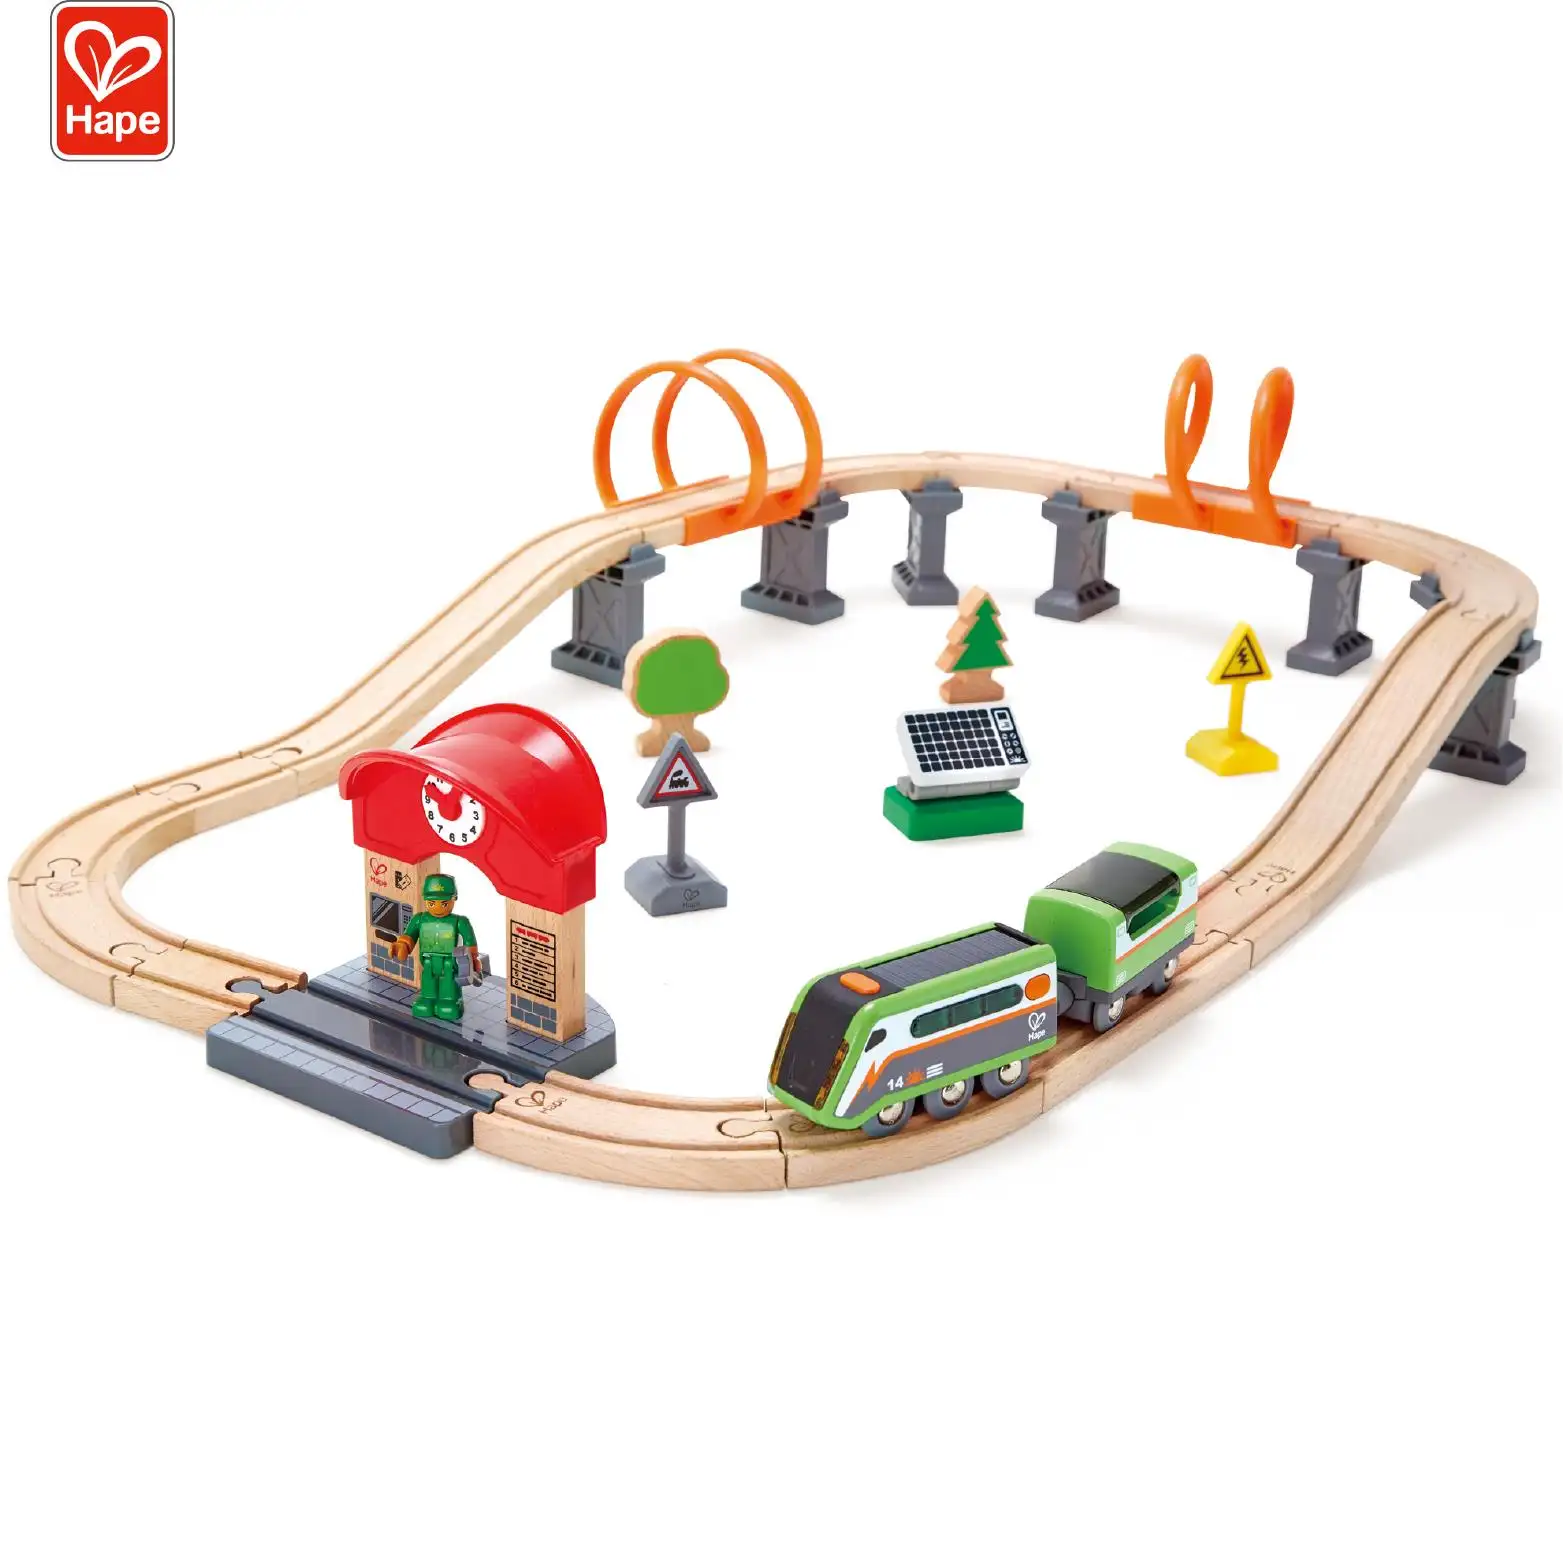 Circuito de energía Solar Hape para niños, tren educativo de madera, juego de vías de juguete, Ferrocarril Eléctrico